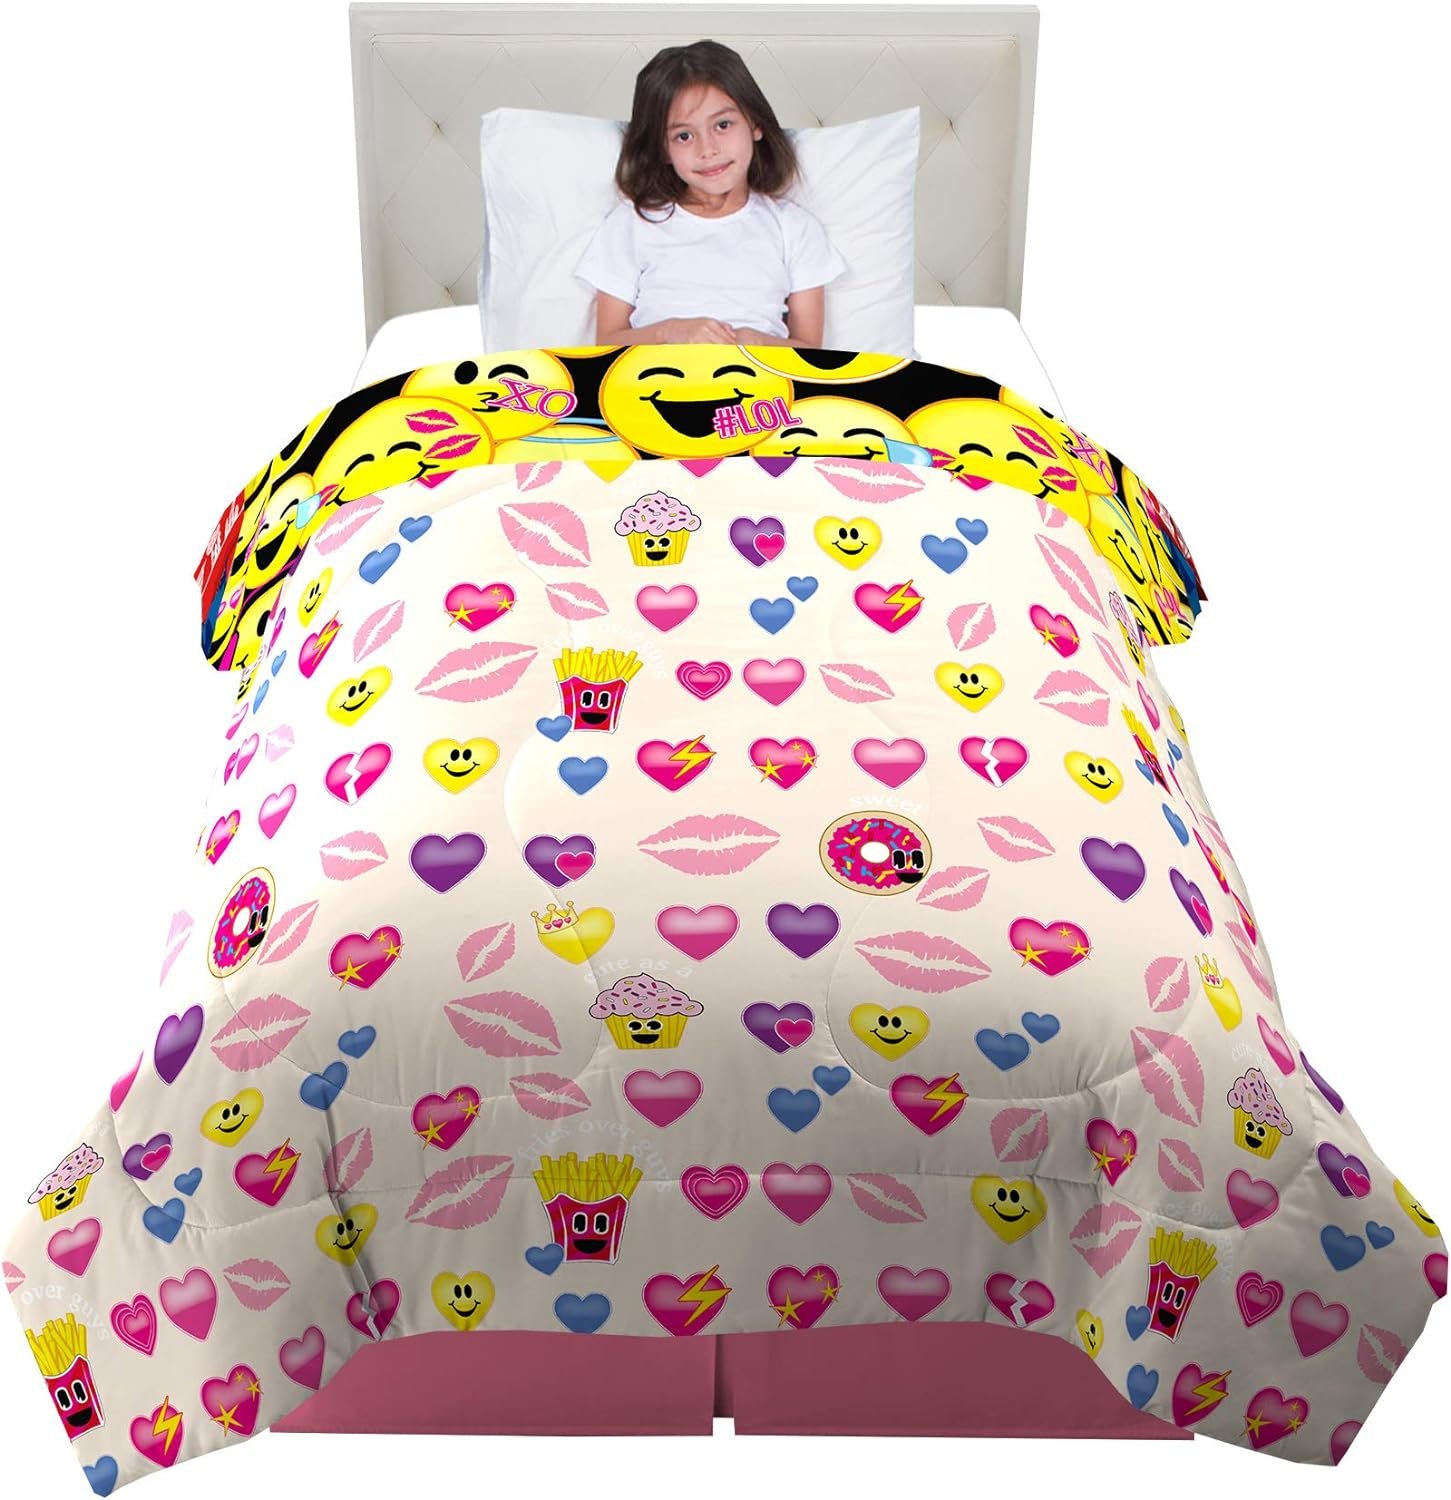 Franco Kids Bedding Super Soft Comforter, Twin Size 64" x 86", Emojination - image 2 of 5